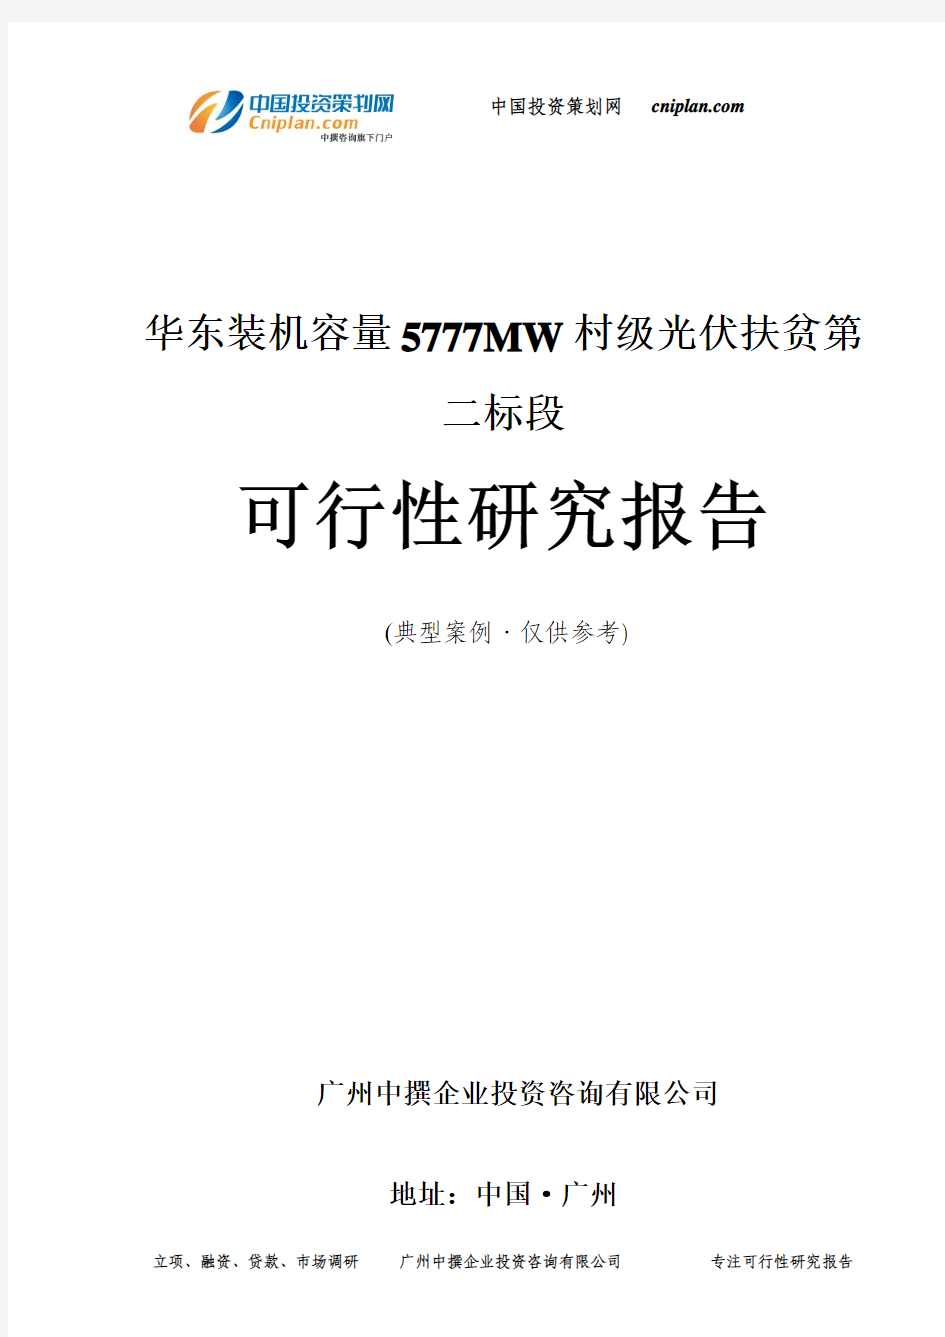 装机容量5777MW村级光伏扶贫第二标段可行性研究报告-广州中撰咨询